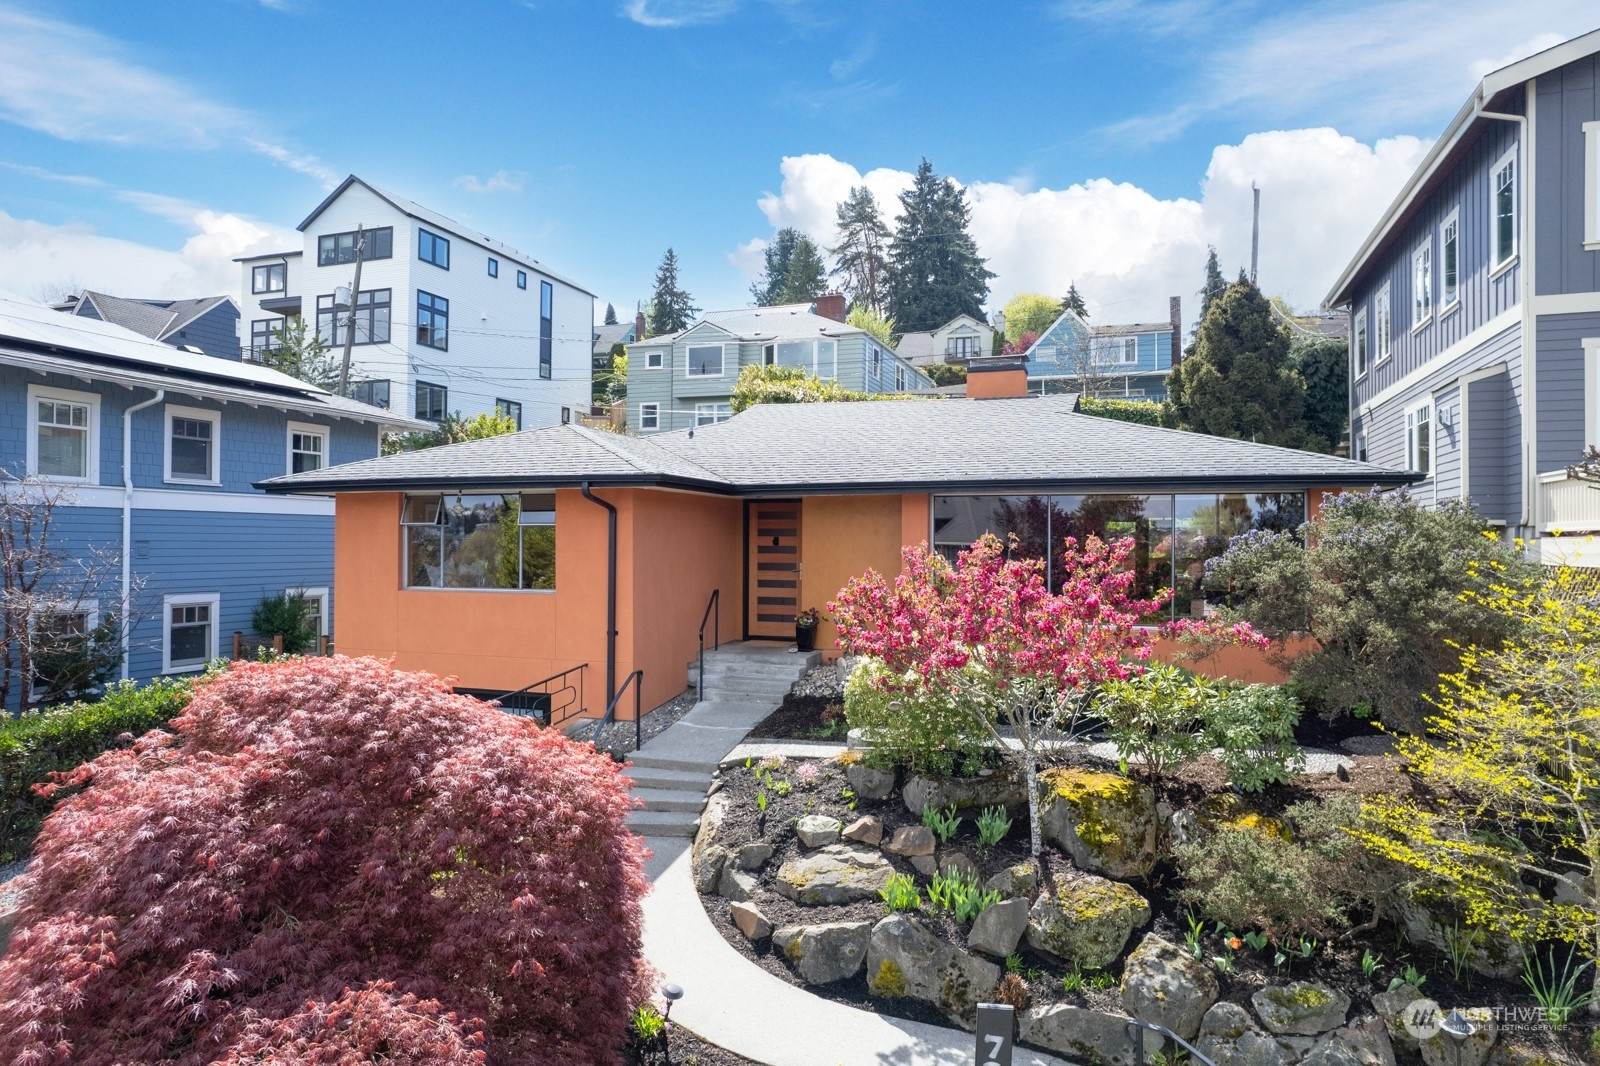 House for sale in Seattle: 733 W Dravus, Seattle, WA 98119